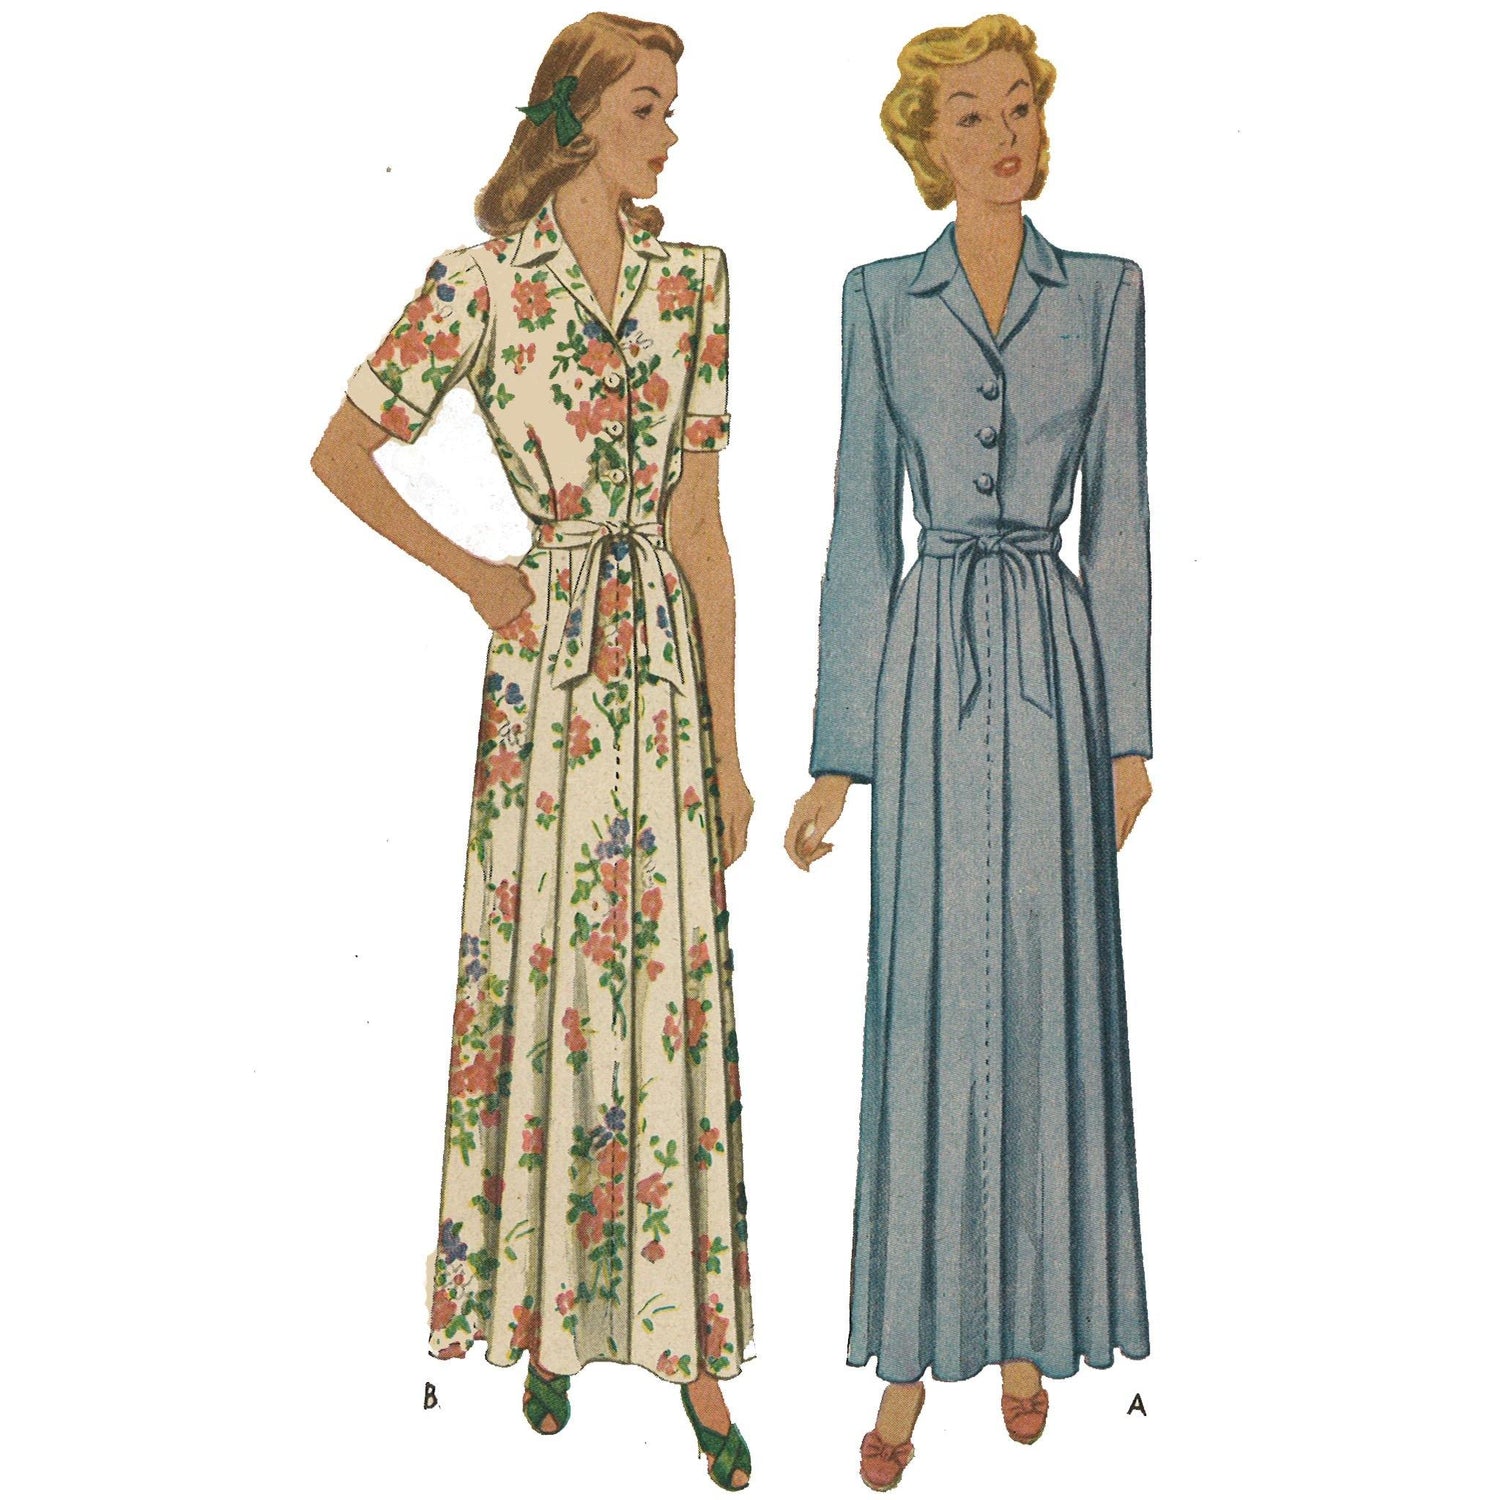 Women wearing 1940s dressing gown